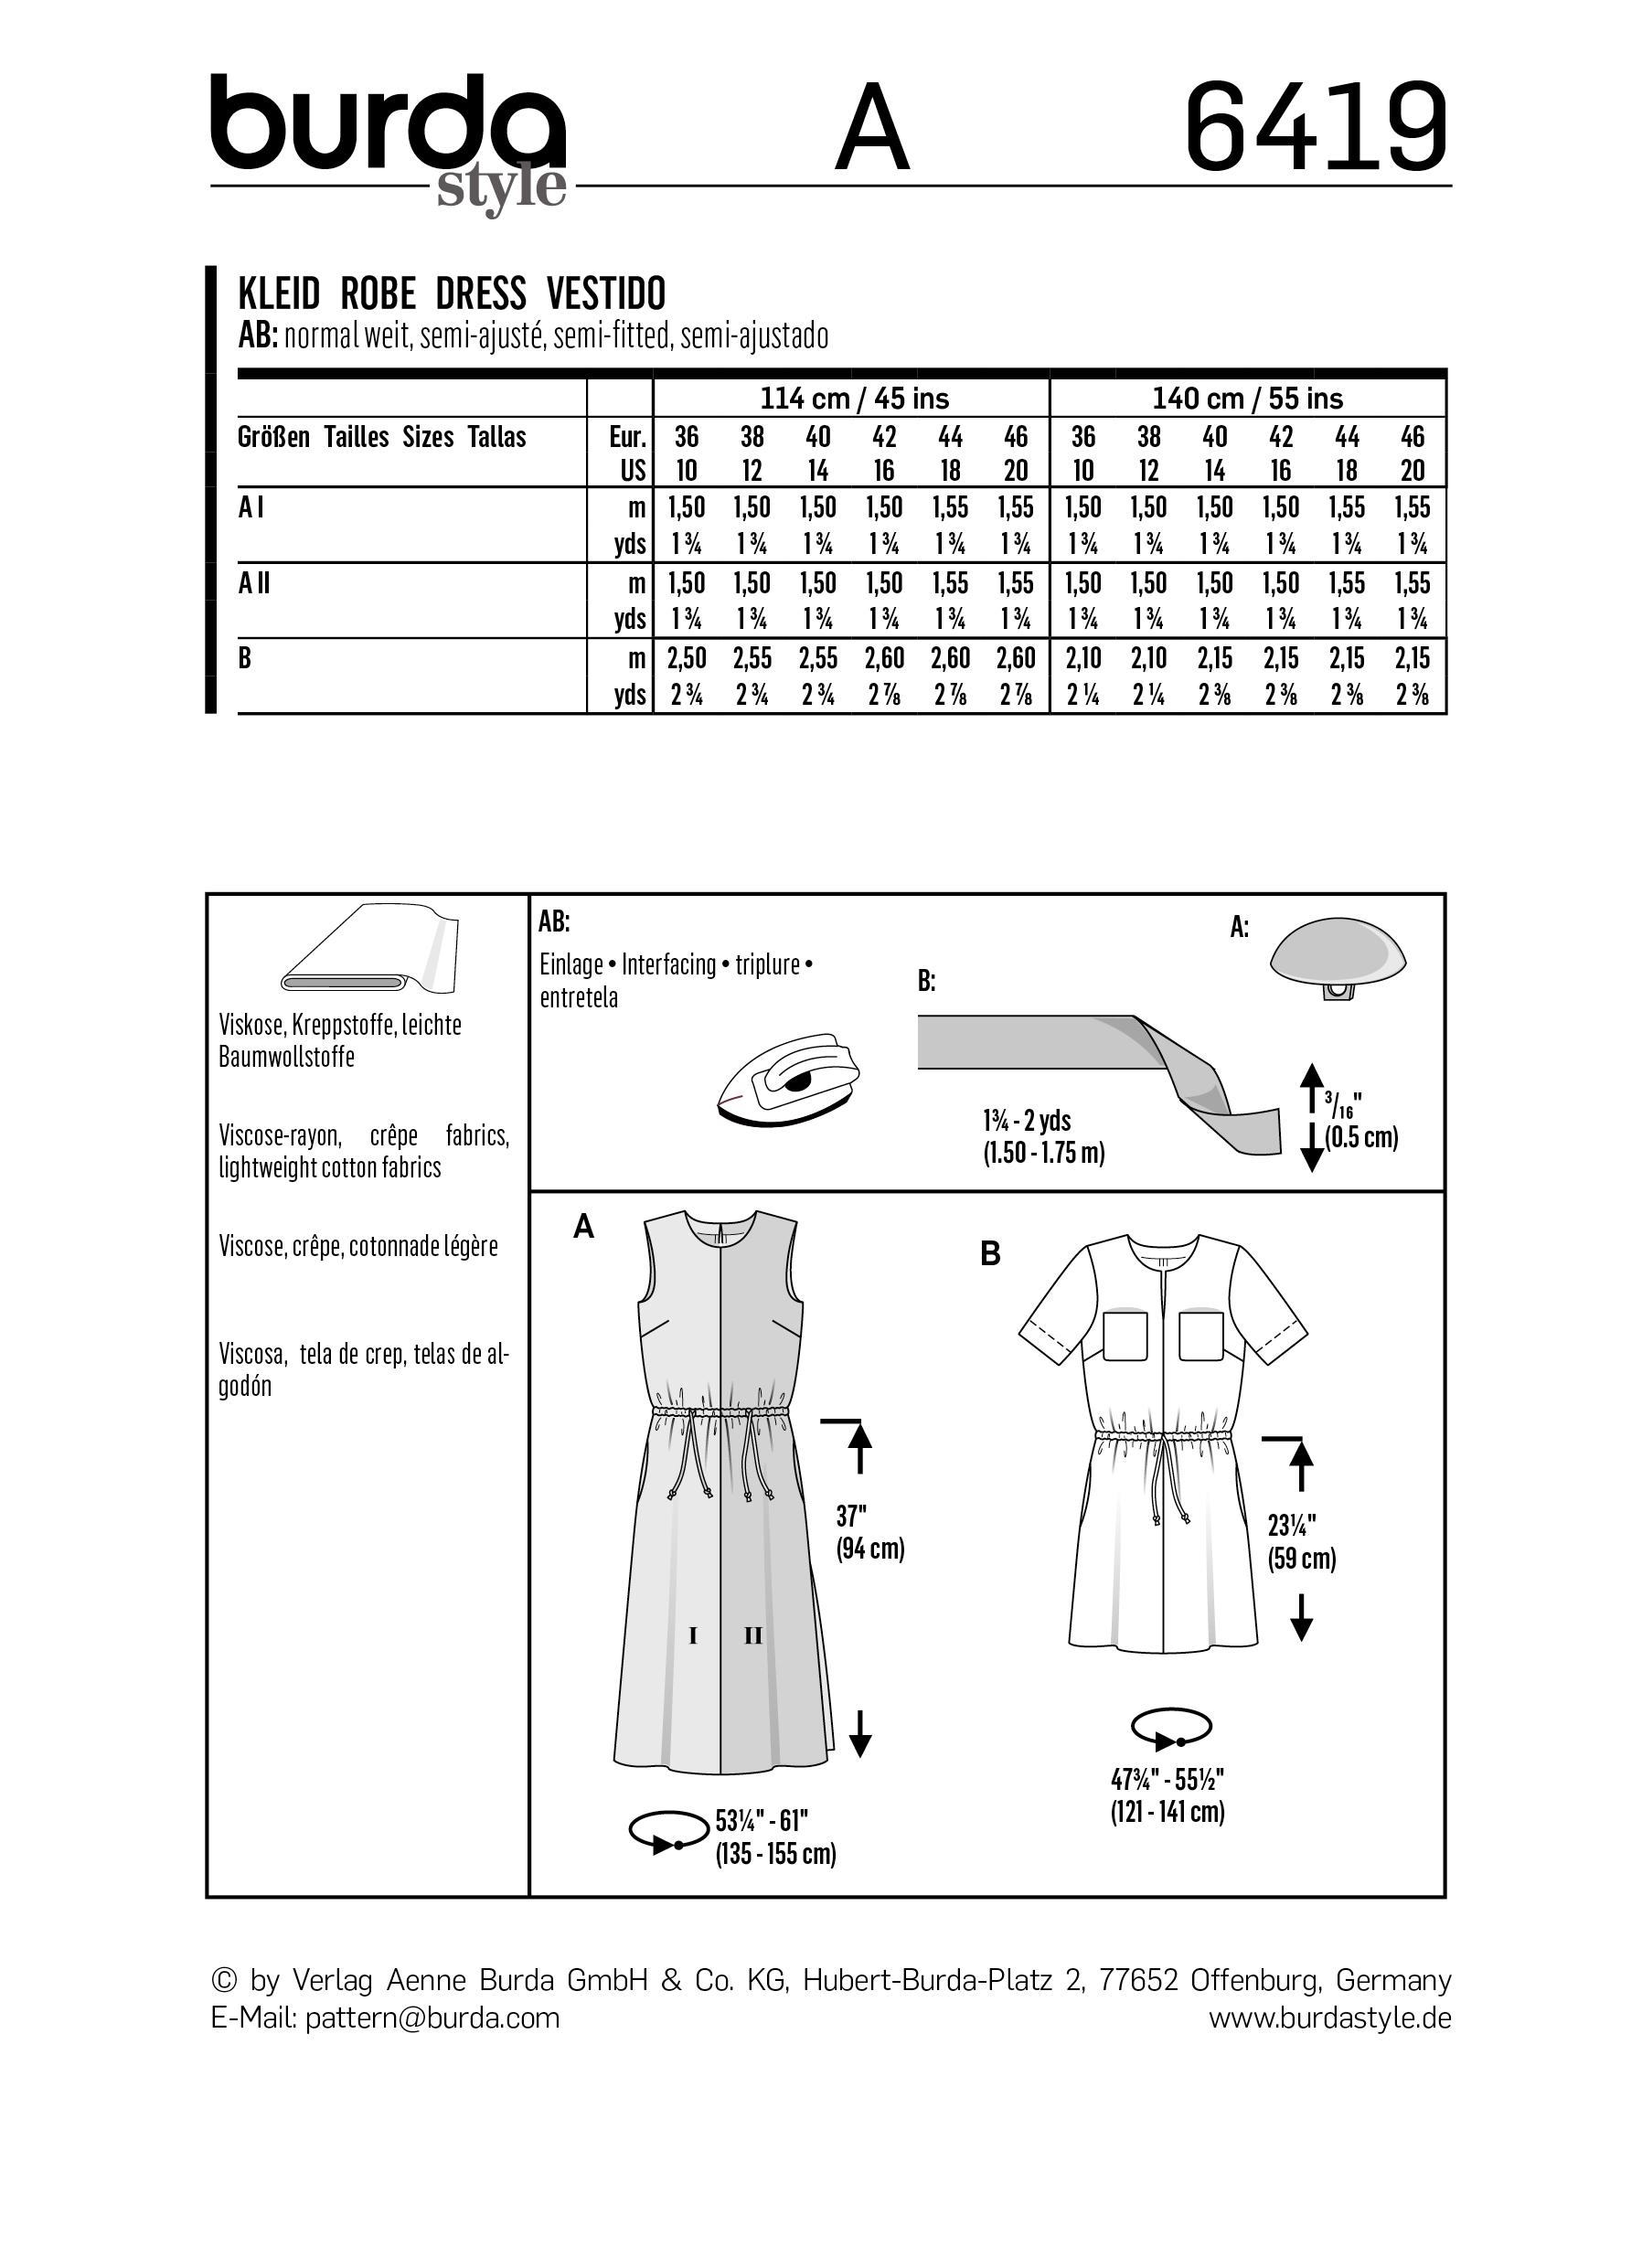 Burda B6419 Women's Short Sleeve Dress